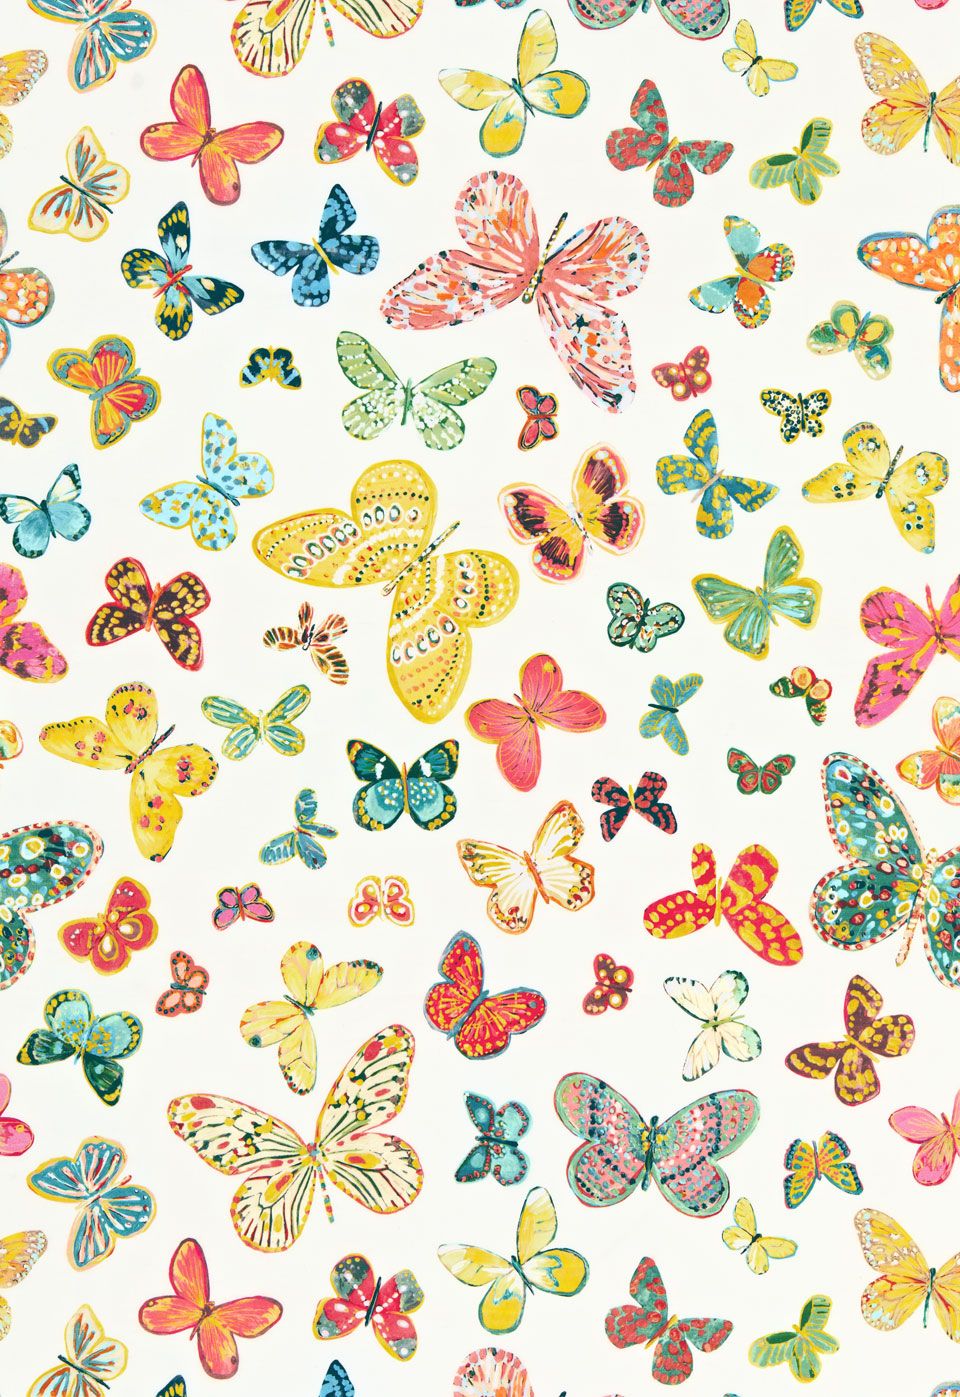 TWENTY ONE 7. Butterfly wallpaper, Butterfly inspiration, Fabric butterfly